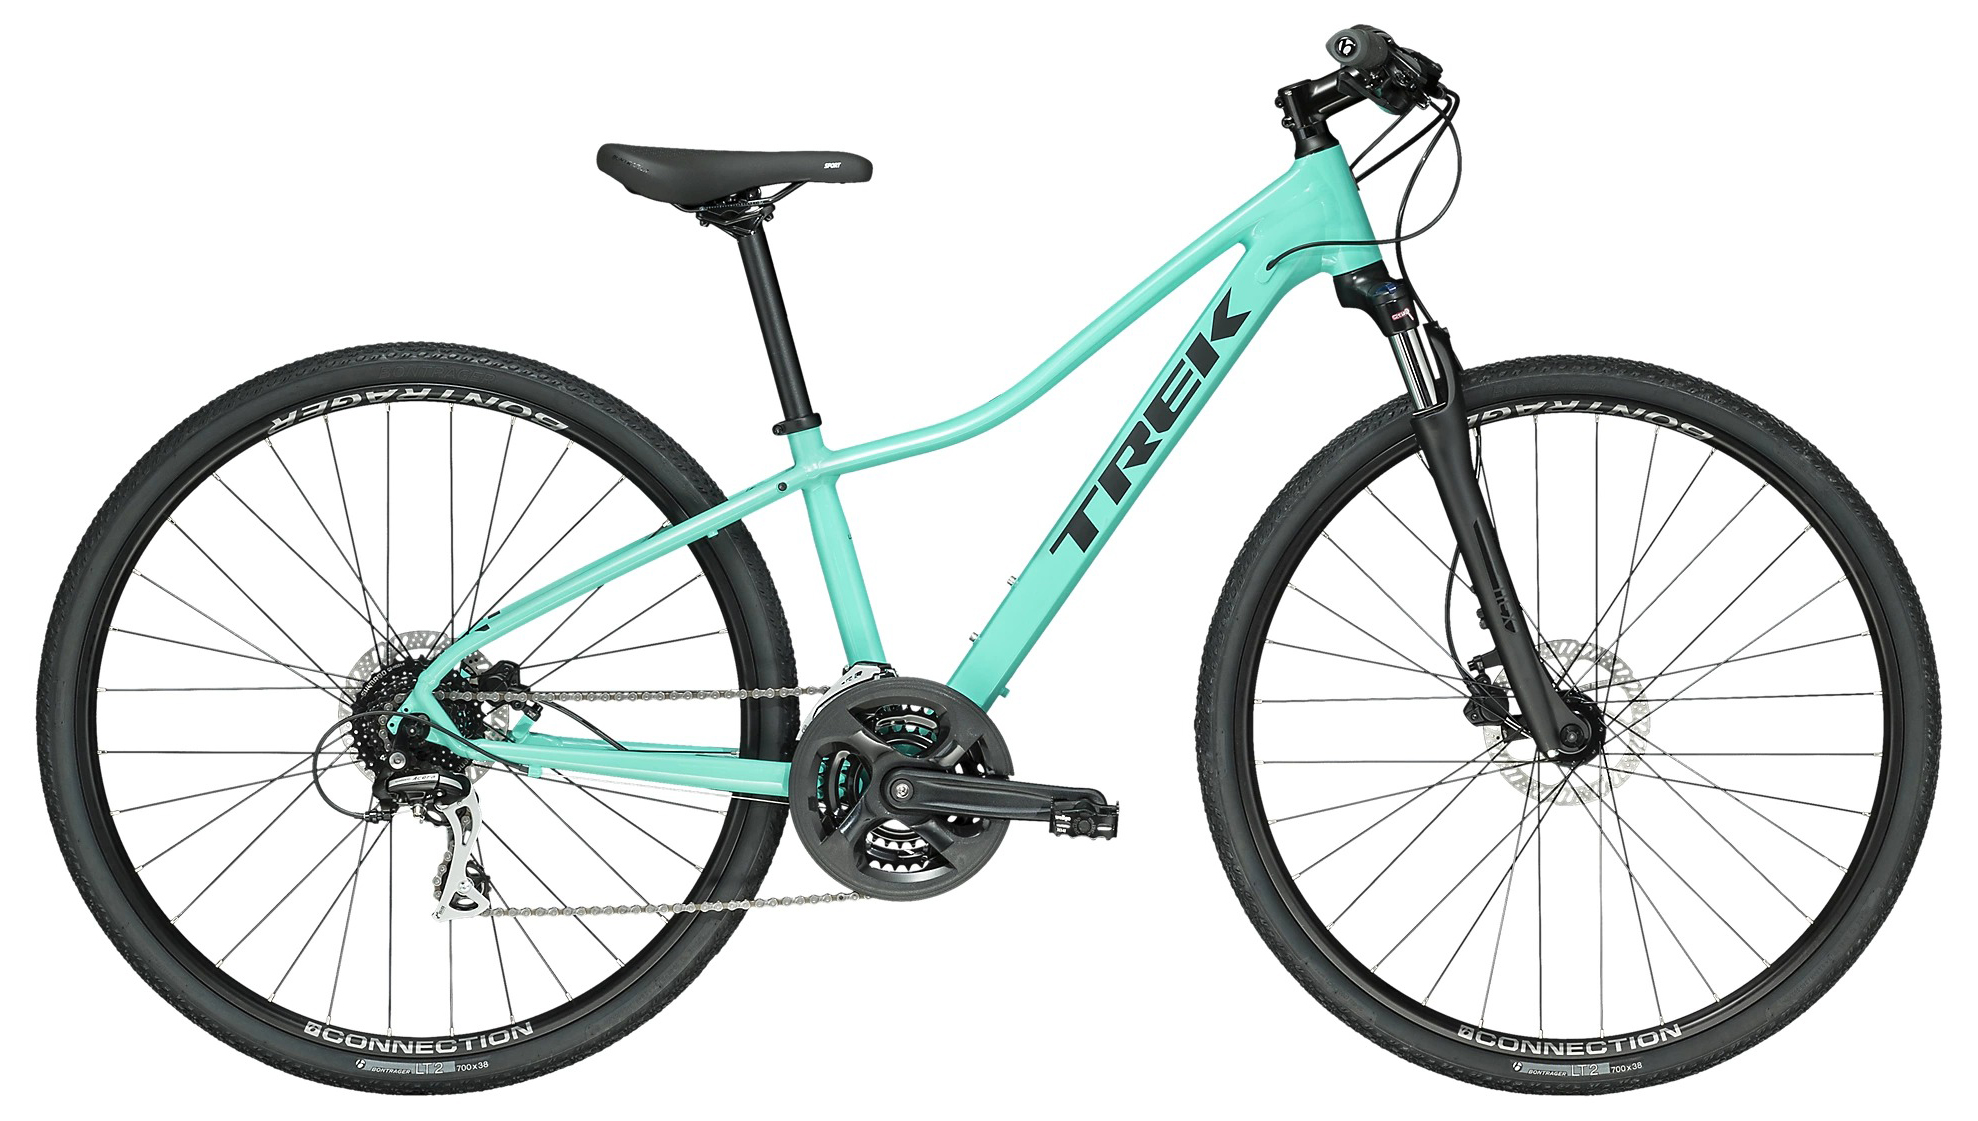  Отзывы о Женском велосипеде Trek DS 2 WSD 2020